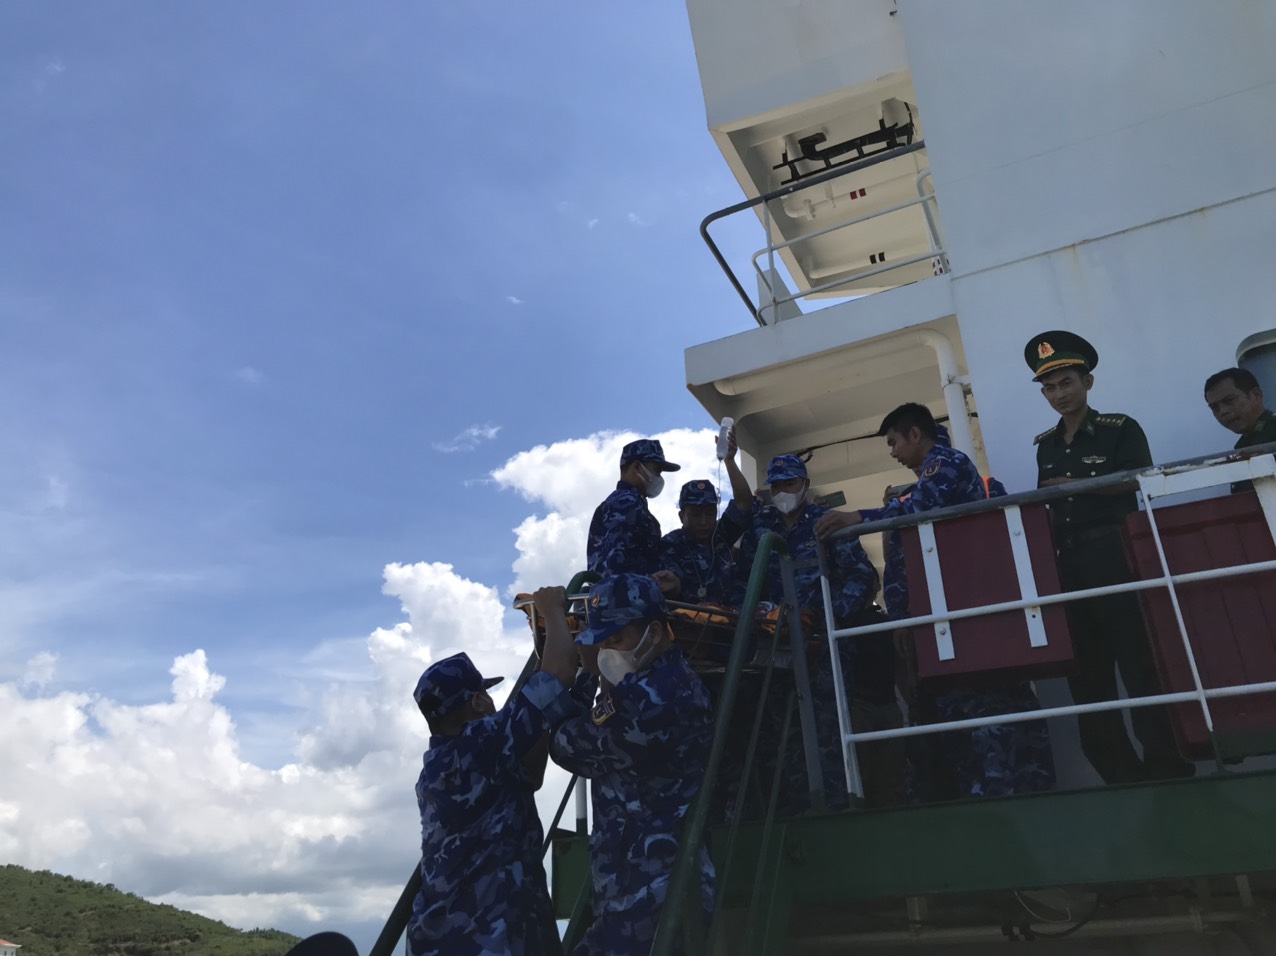 Khánh Hòa: Hình ảnh 4 ngư dân BTh 97478 bị nạn vào đất liền cấp cứu - Ảnh 3.